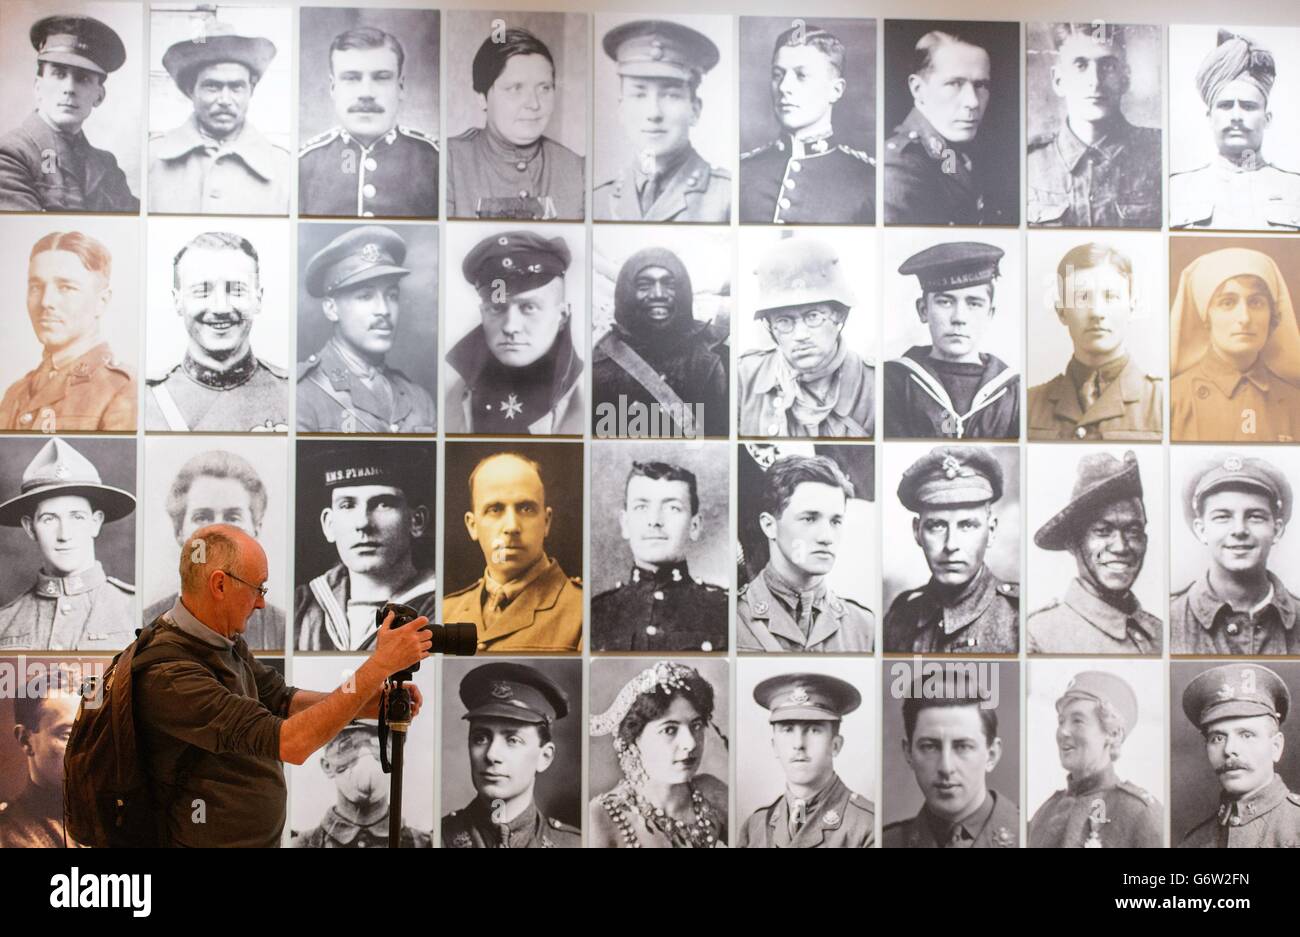 Un visiteur voit un montage de portraits des protagonistes de la première Guerre mondiale, qui fait partie de l'exposition « la Grande Guerre des Portraits », qui se déroule au National Portrait Gallery, dans le centre de Londres, du 27 février au 15 juin 2014. Banque D'Images